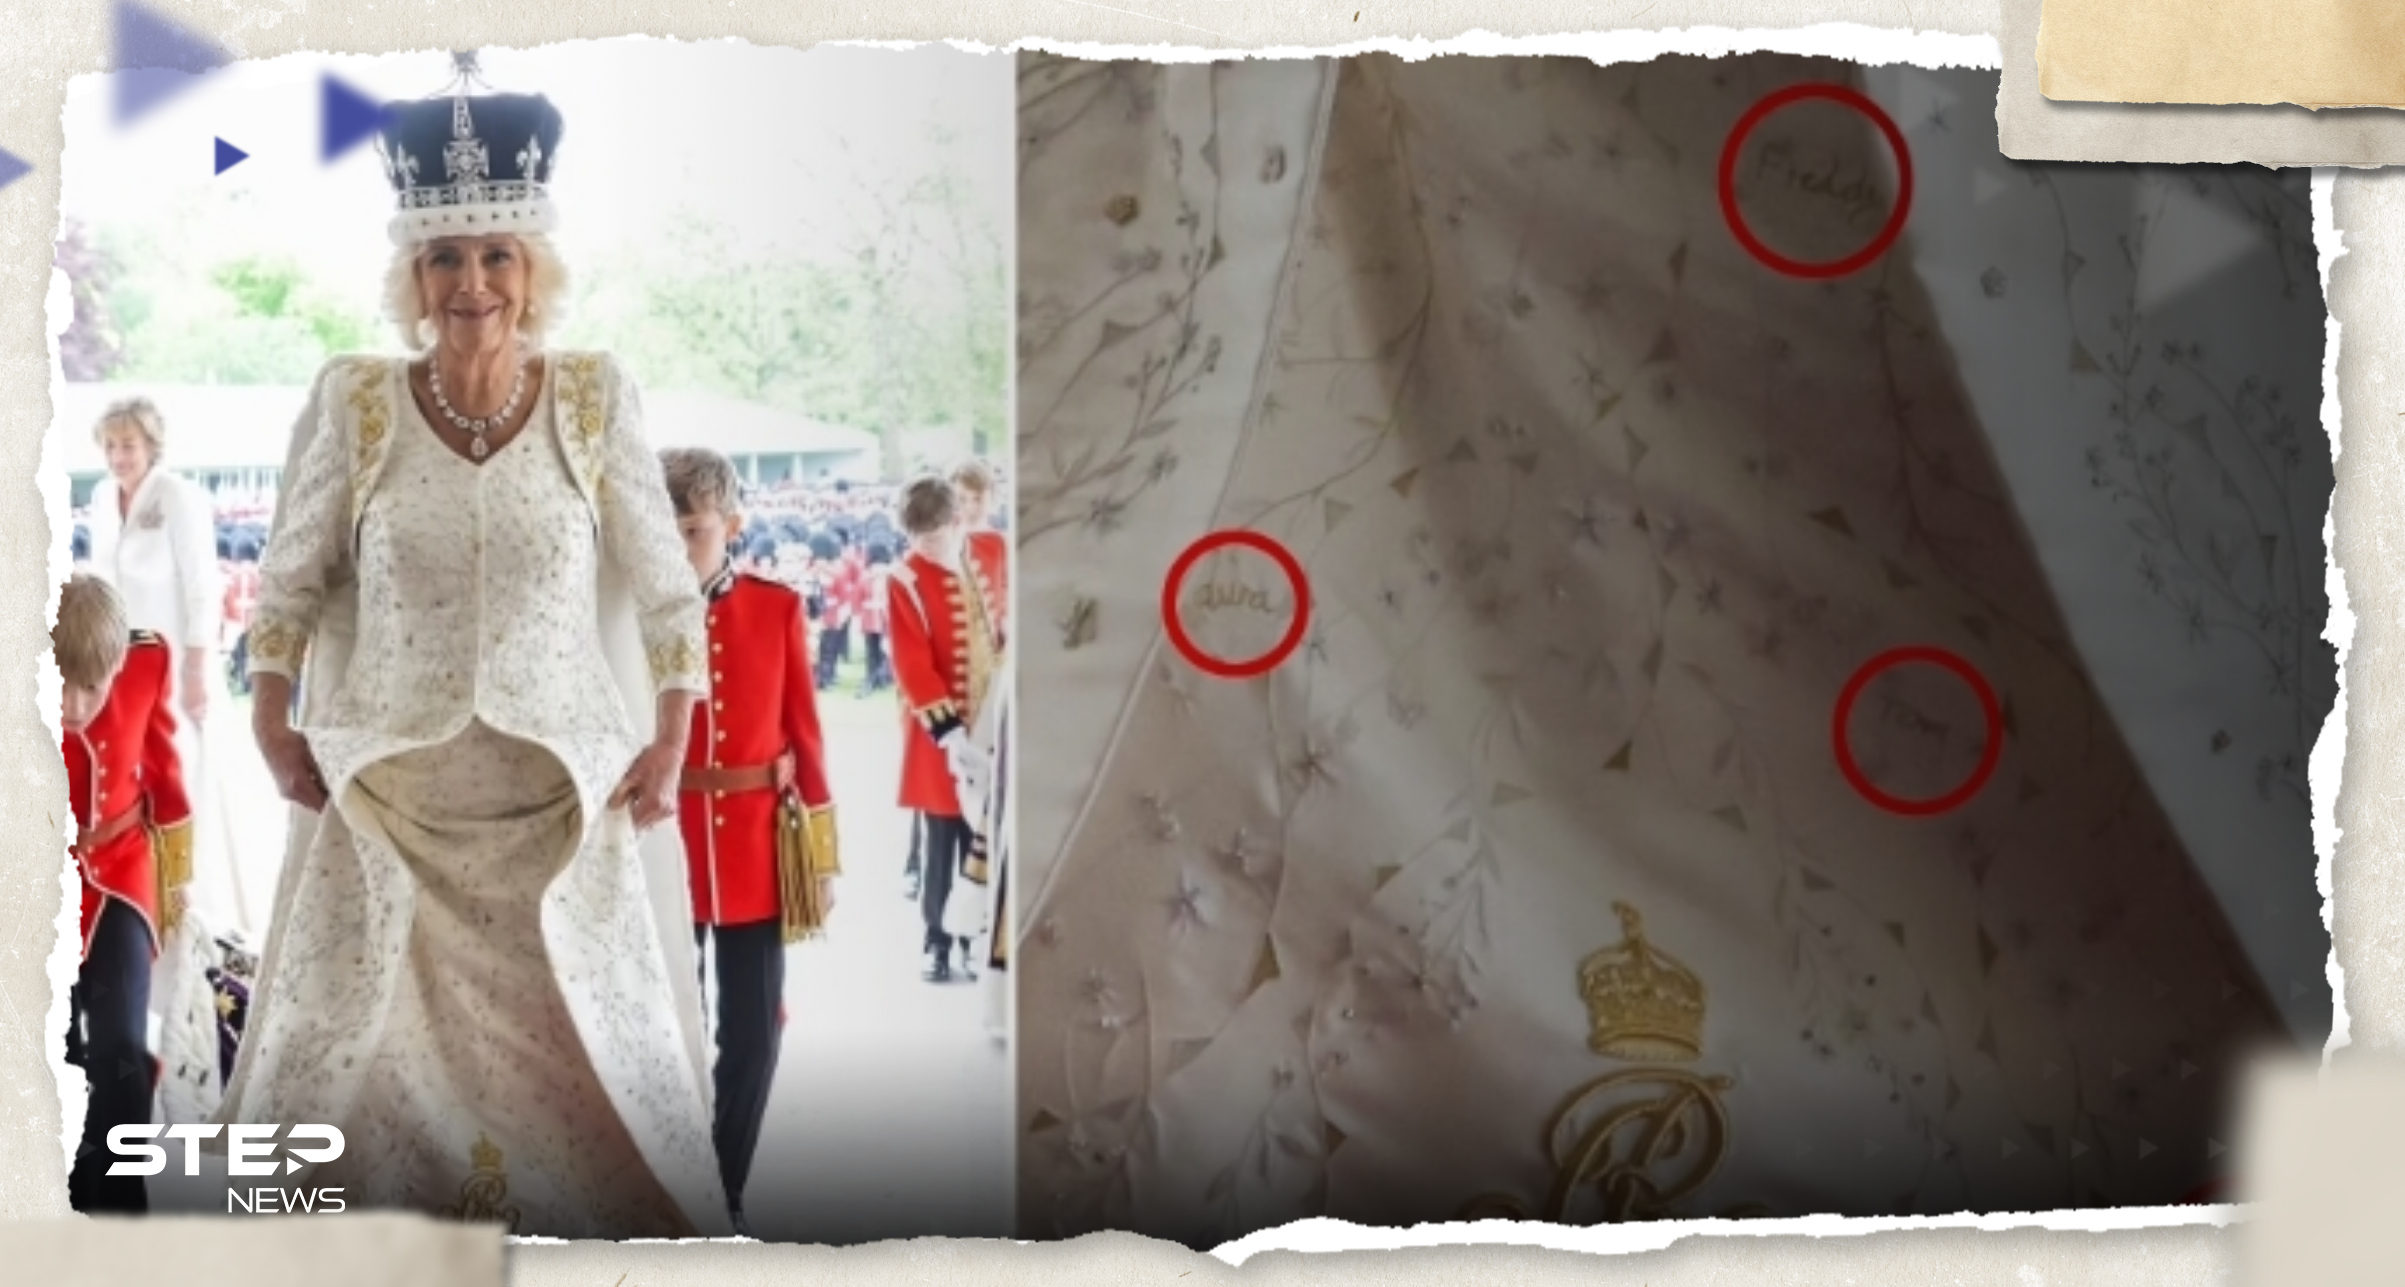 شاهد|| صور ترصد أسماء وكلمات خيطت على فستان ملكة بريطانيا بحفل التتويج وتقرير يكشف "سرها" 